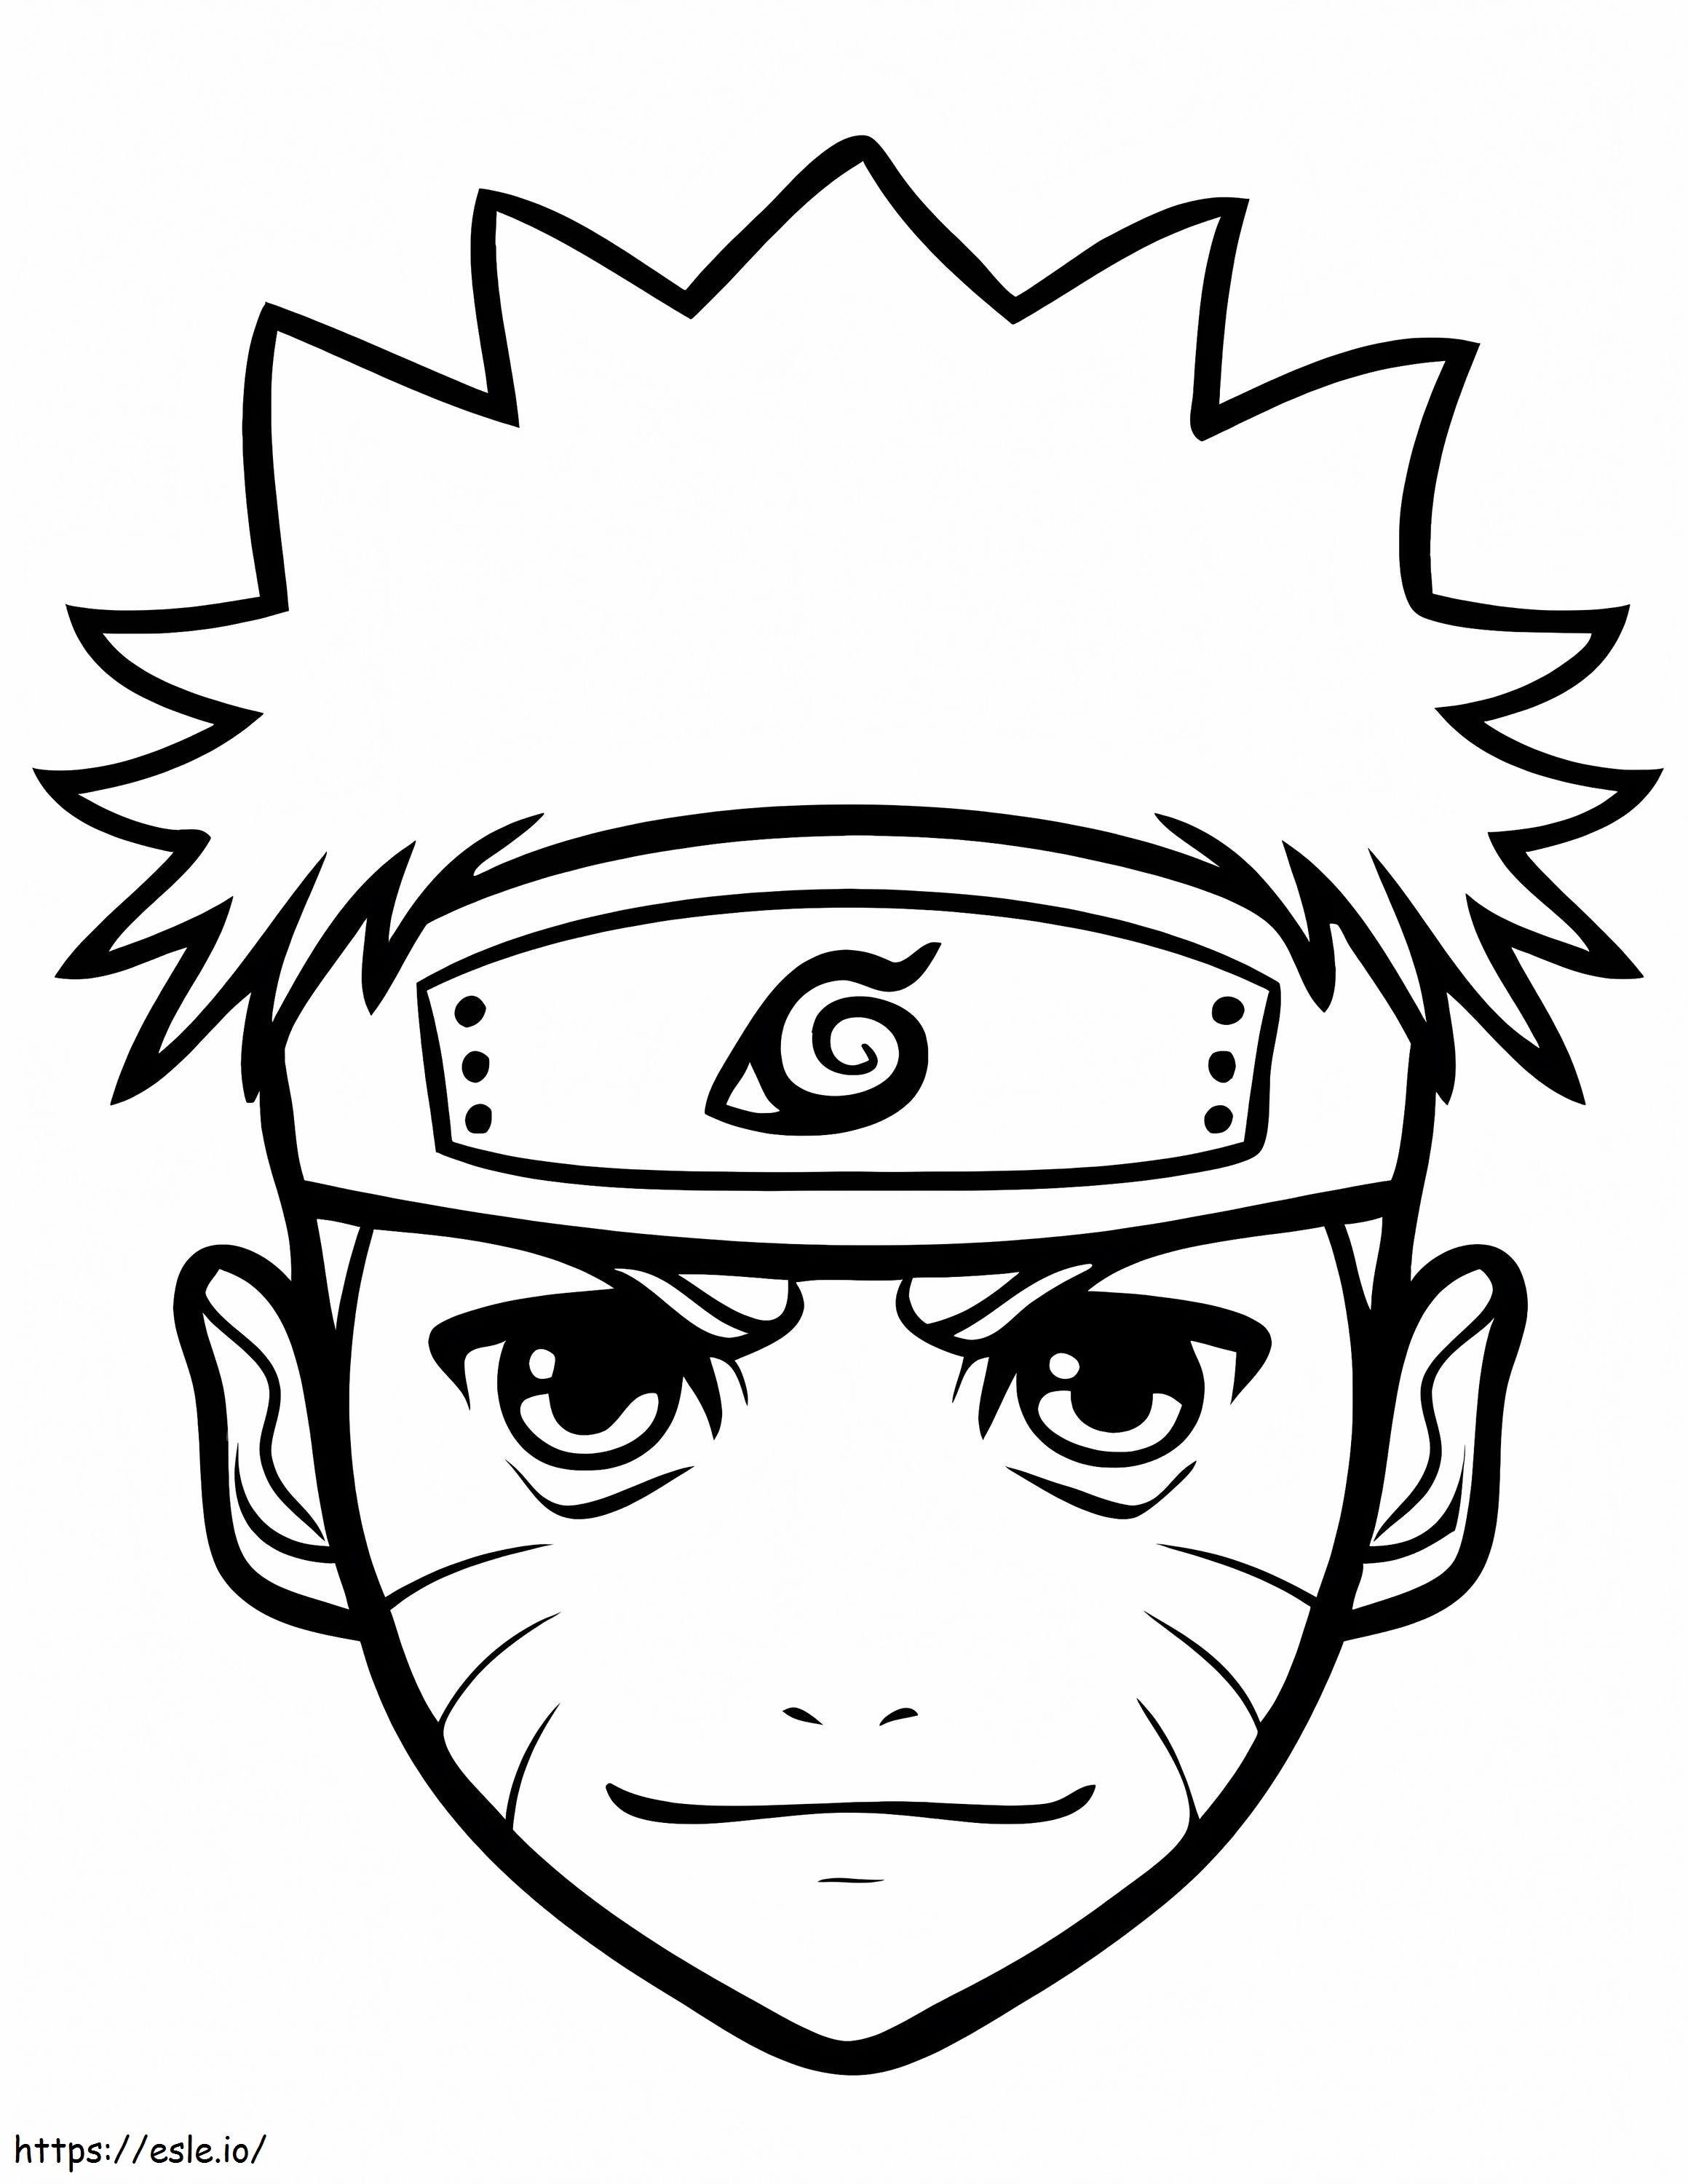 Naruto Mangá Especial - O Rosto De Kakashi Colorido 